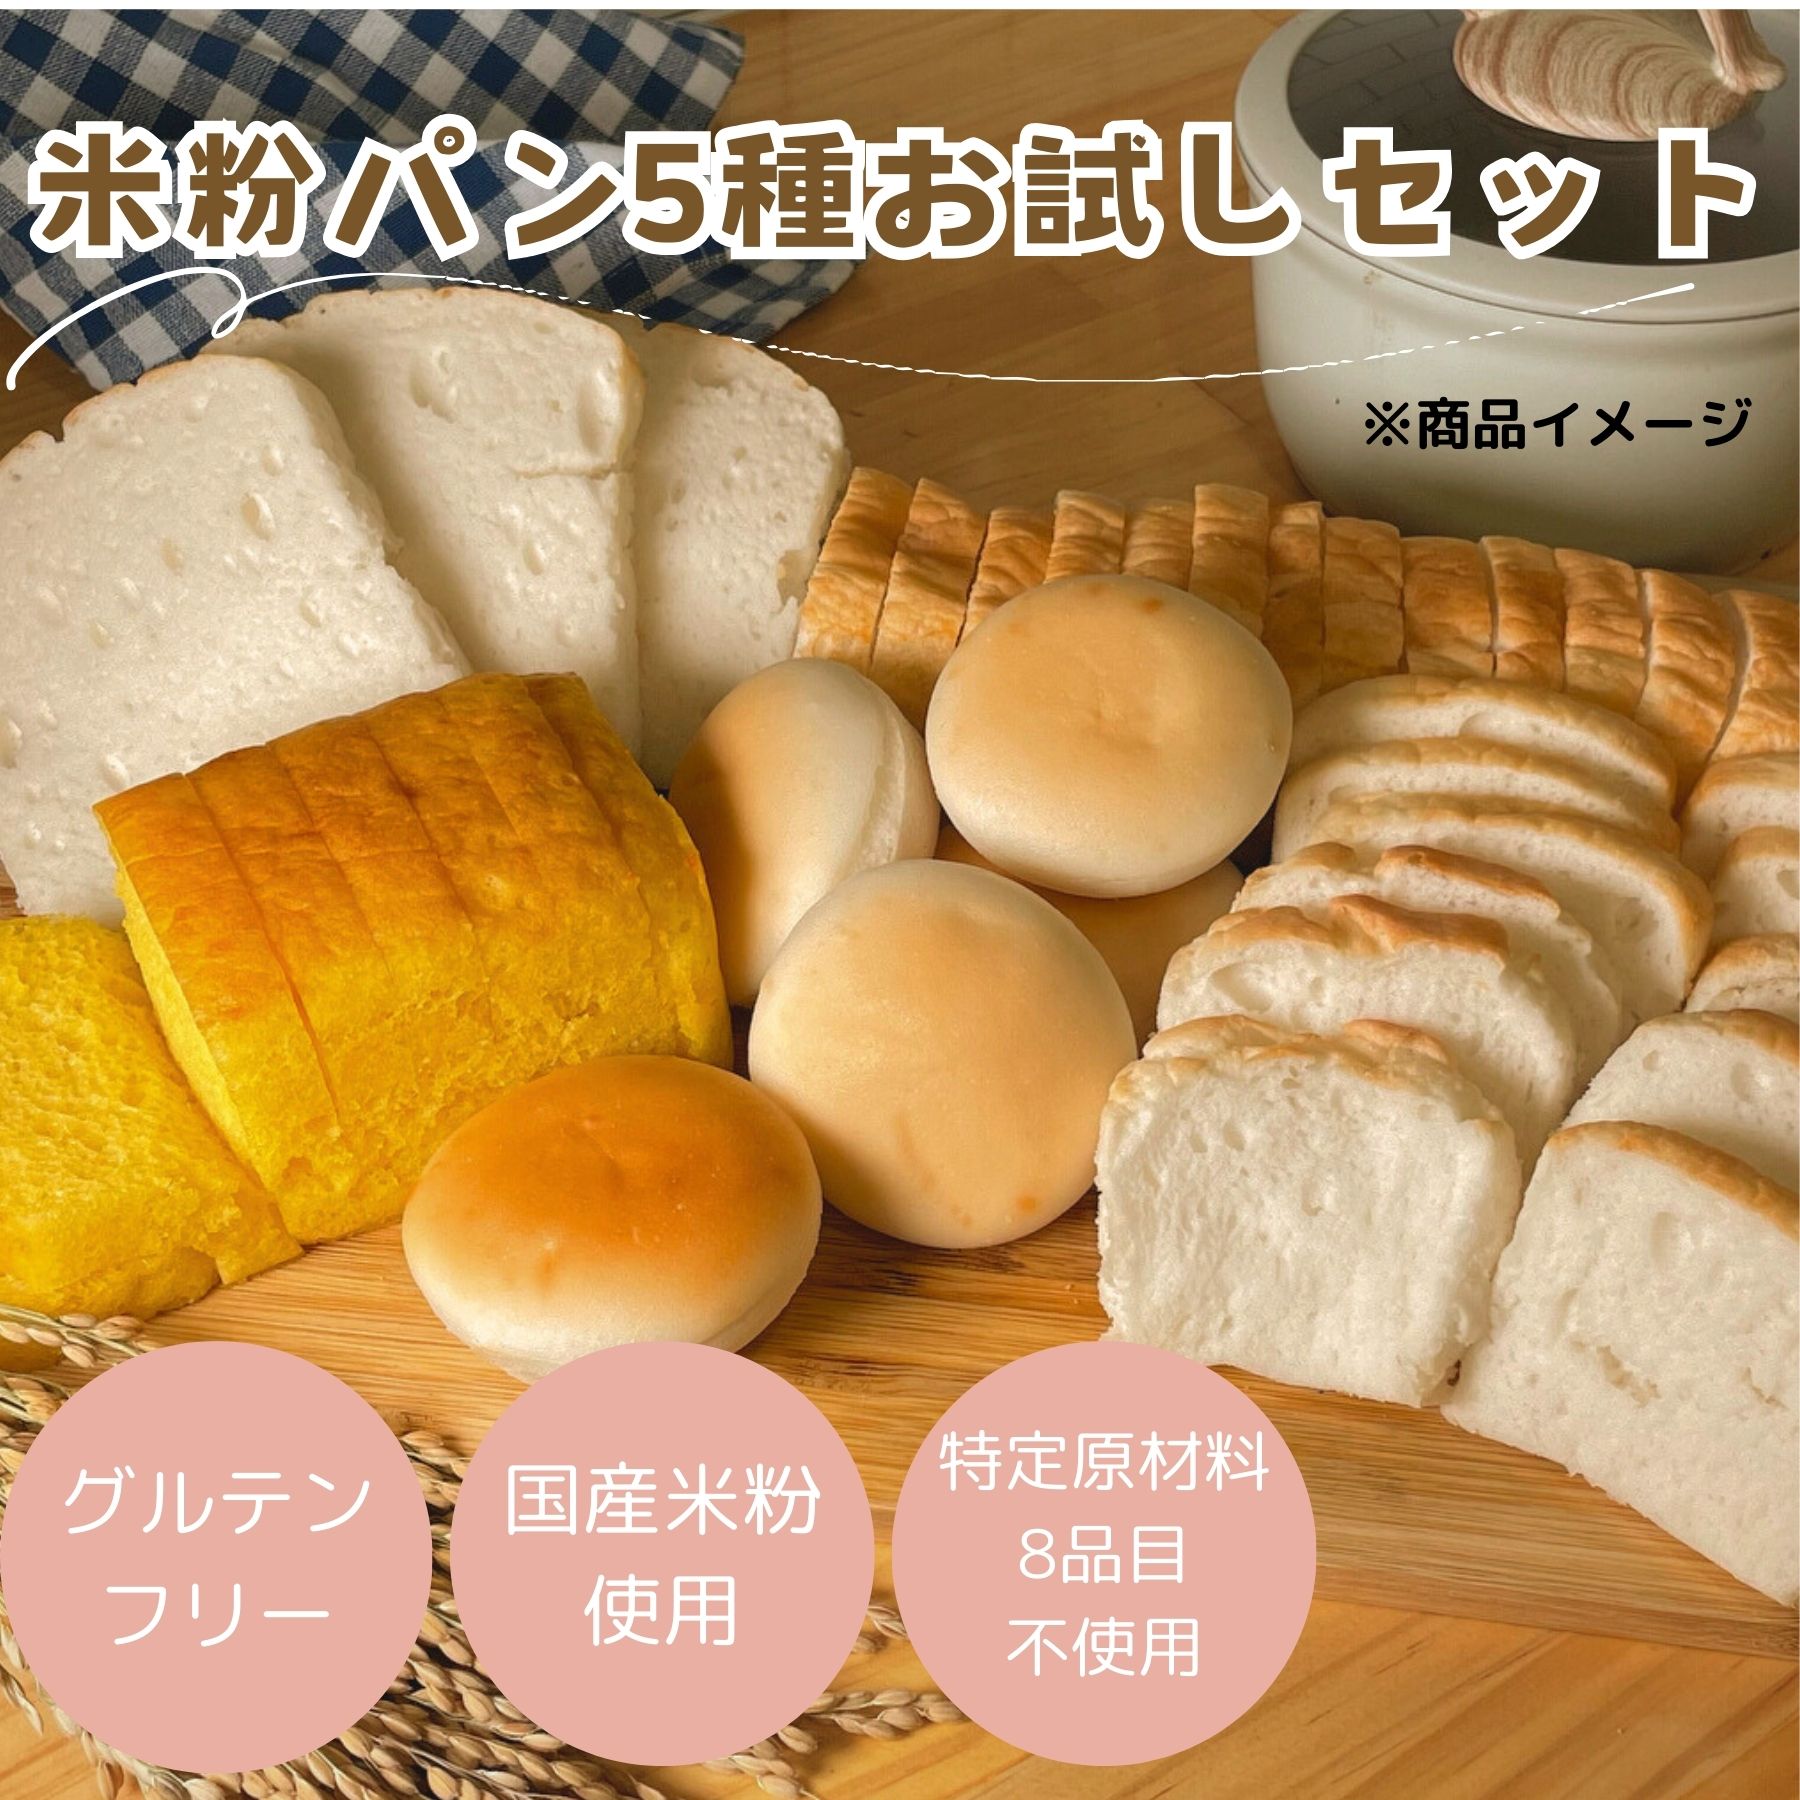 公式 みんなの食卓 米粉パン アソートセット 5種 お試し 日本ハム グルテンフリー アレルギー対応 送料無料 冷凍